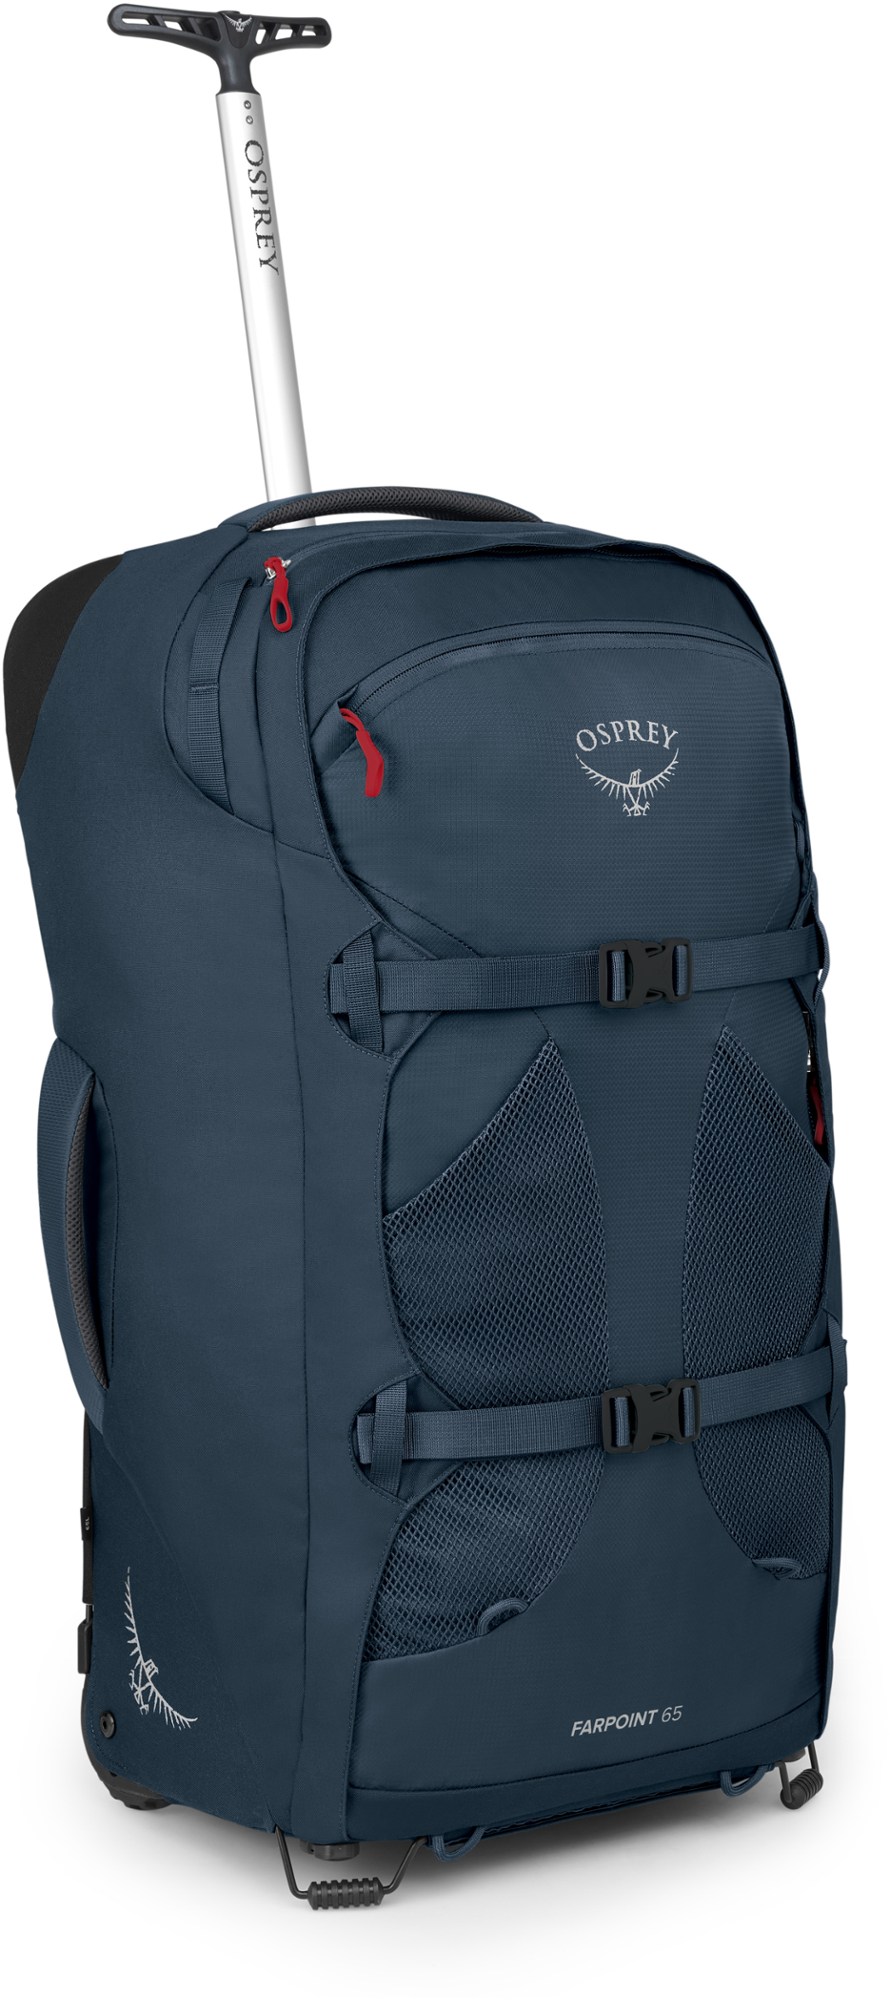 Дорожный рюкзак Farpoint 65 на колесиках — мужской Osprey, синий